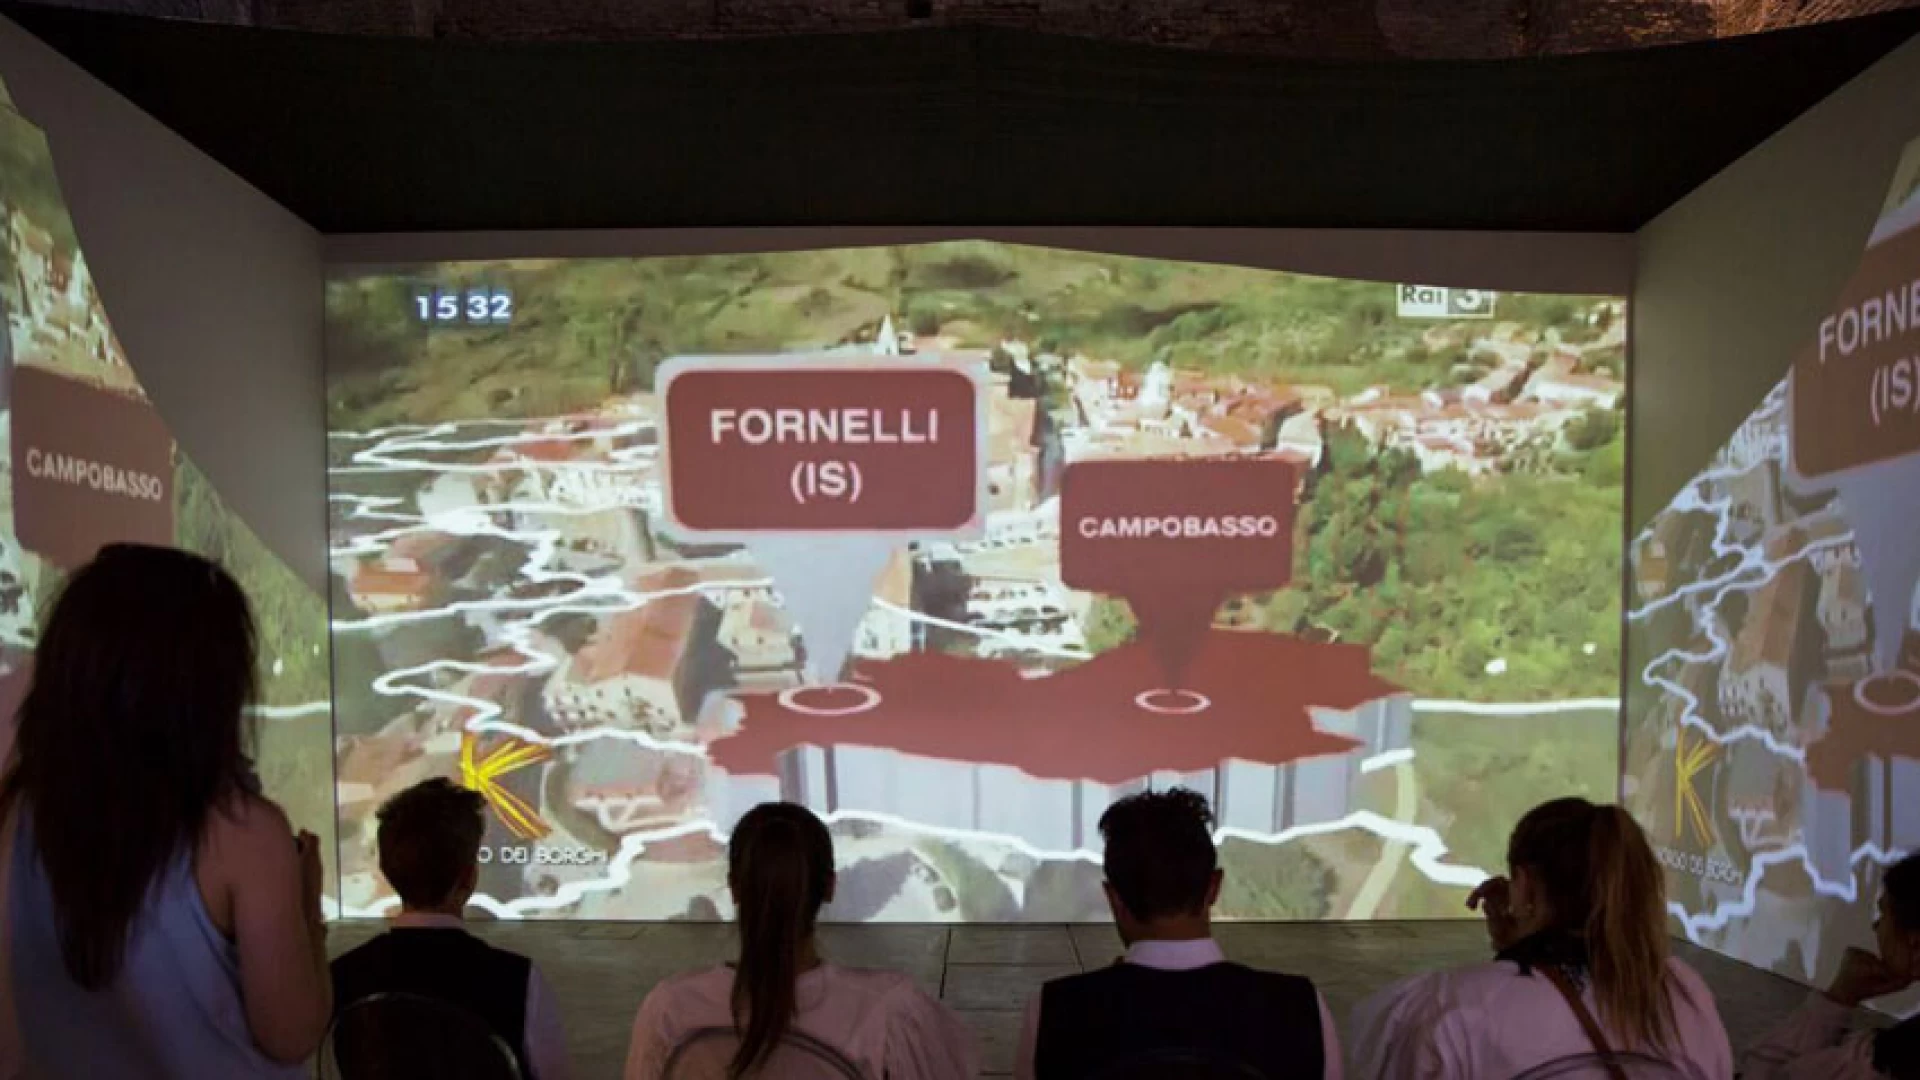 Il Borgo di Fornelli protagonista alla Terme di Diocleziano. In occasione della manifestazione “Ai Confini della Meraviglia” spazio espositivo per il centro della provincia di Isernia.